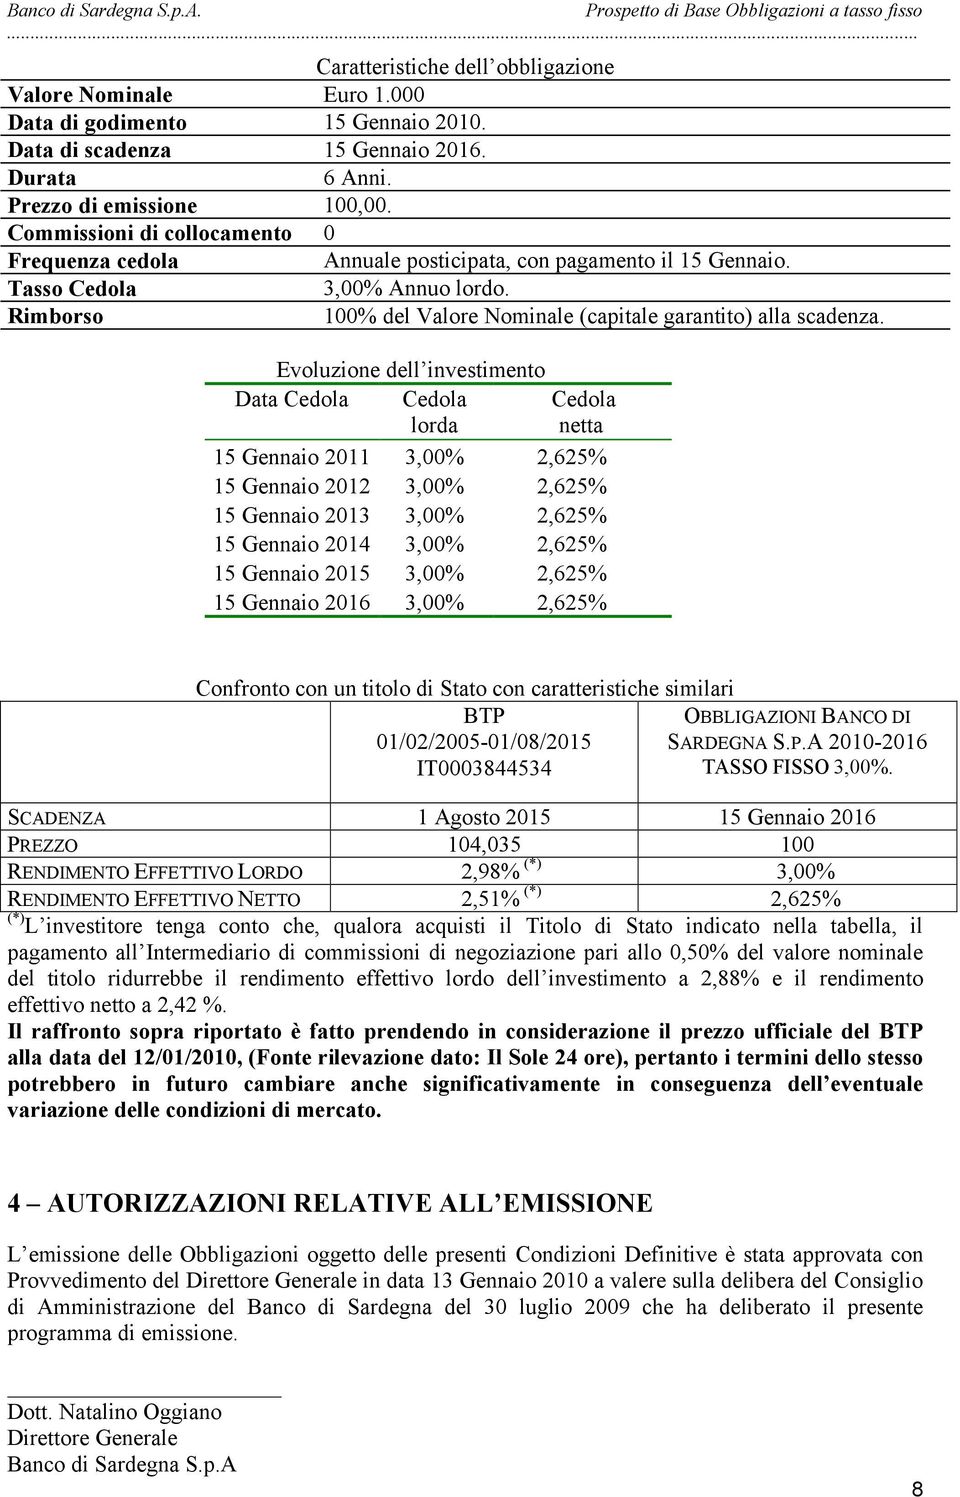 Evoluzione dell investimento Data Cedola Cedola lorda Cedola netta 15 Gennaio 2011 3,00% 2,625% 15 Gennaio 2012 3,00% 2,625% 15 Gennaio 2013 3,00% 2,625% 15 Gennaio 2014 3,00% 2,625% 15 Gennaio 2015